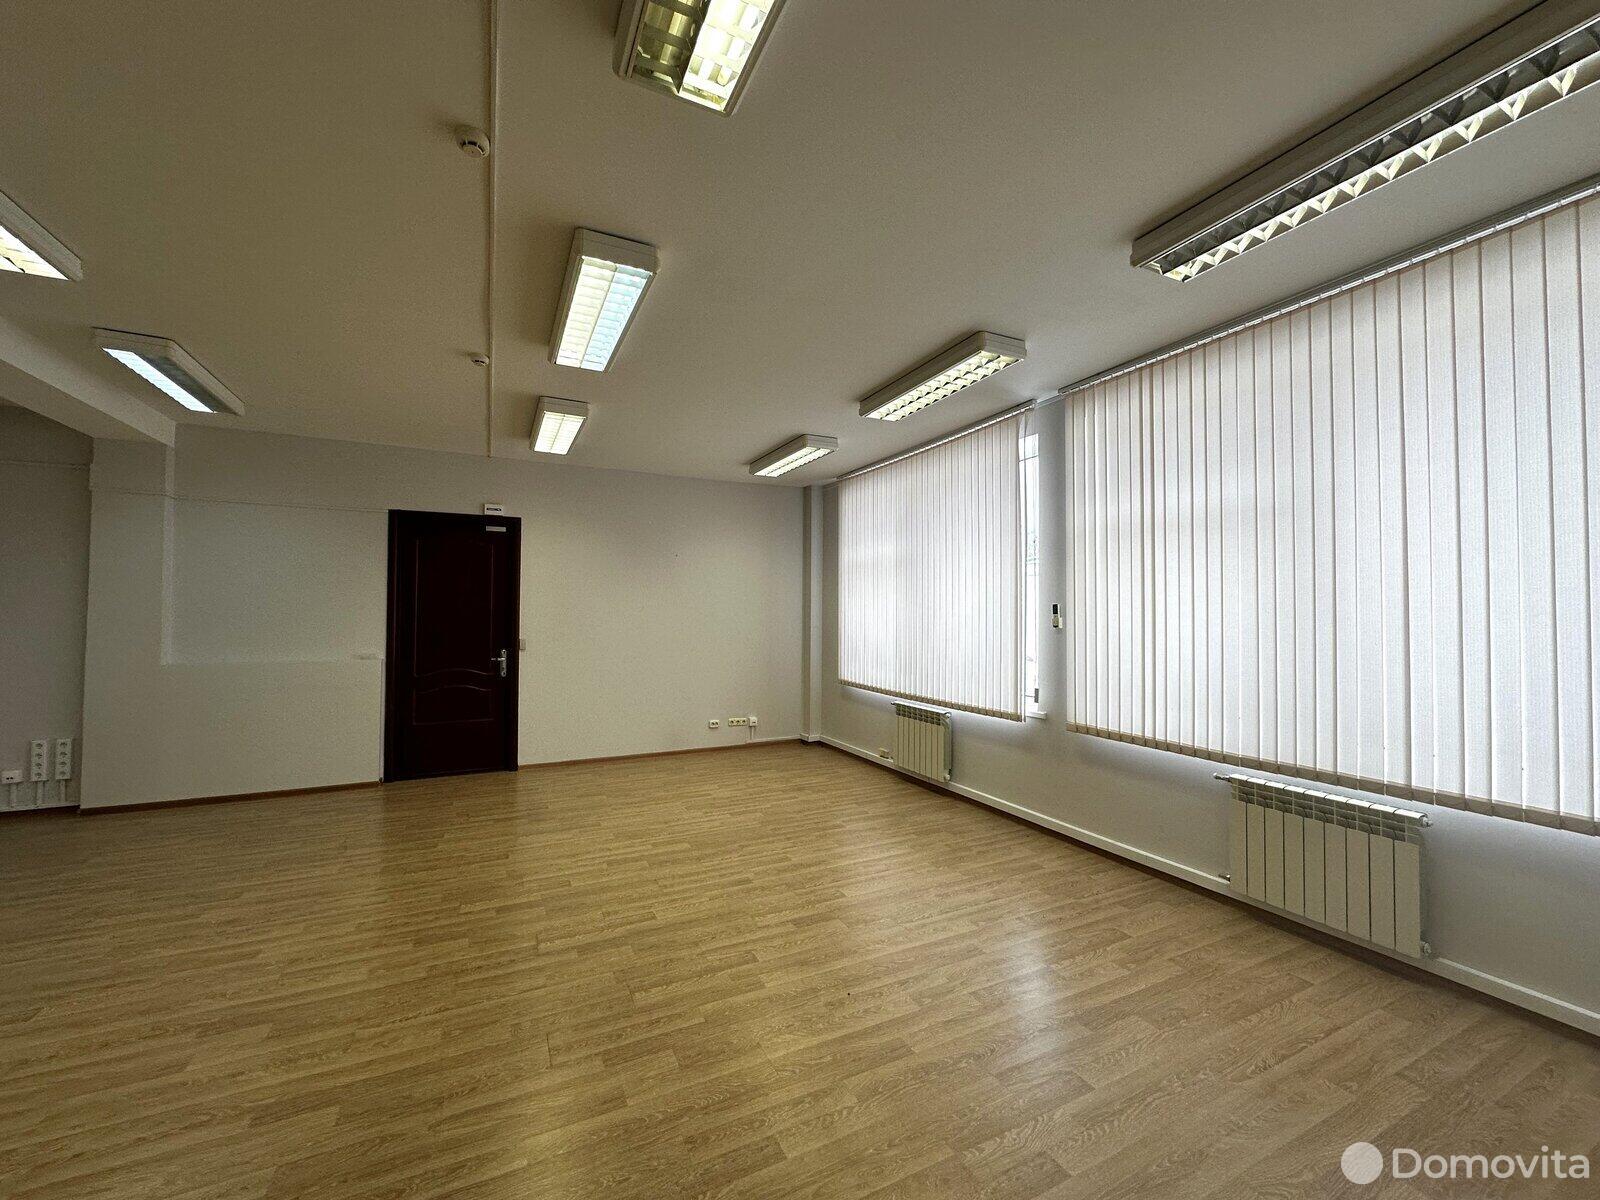 Снять офис на ул. Калинина, д. 7/б в Минске, 2830USD, код 11752 - фото 3